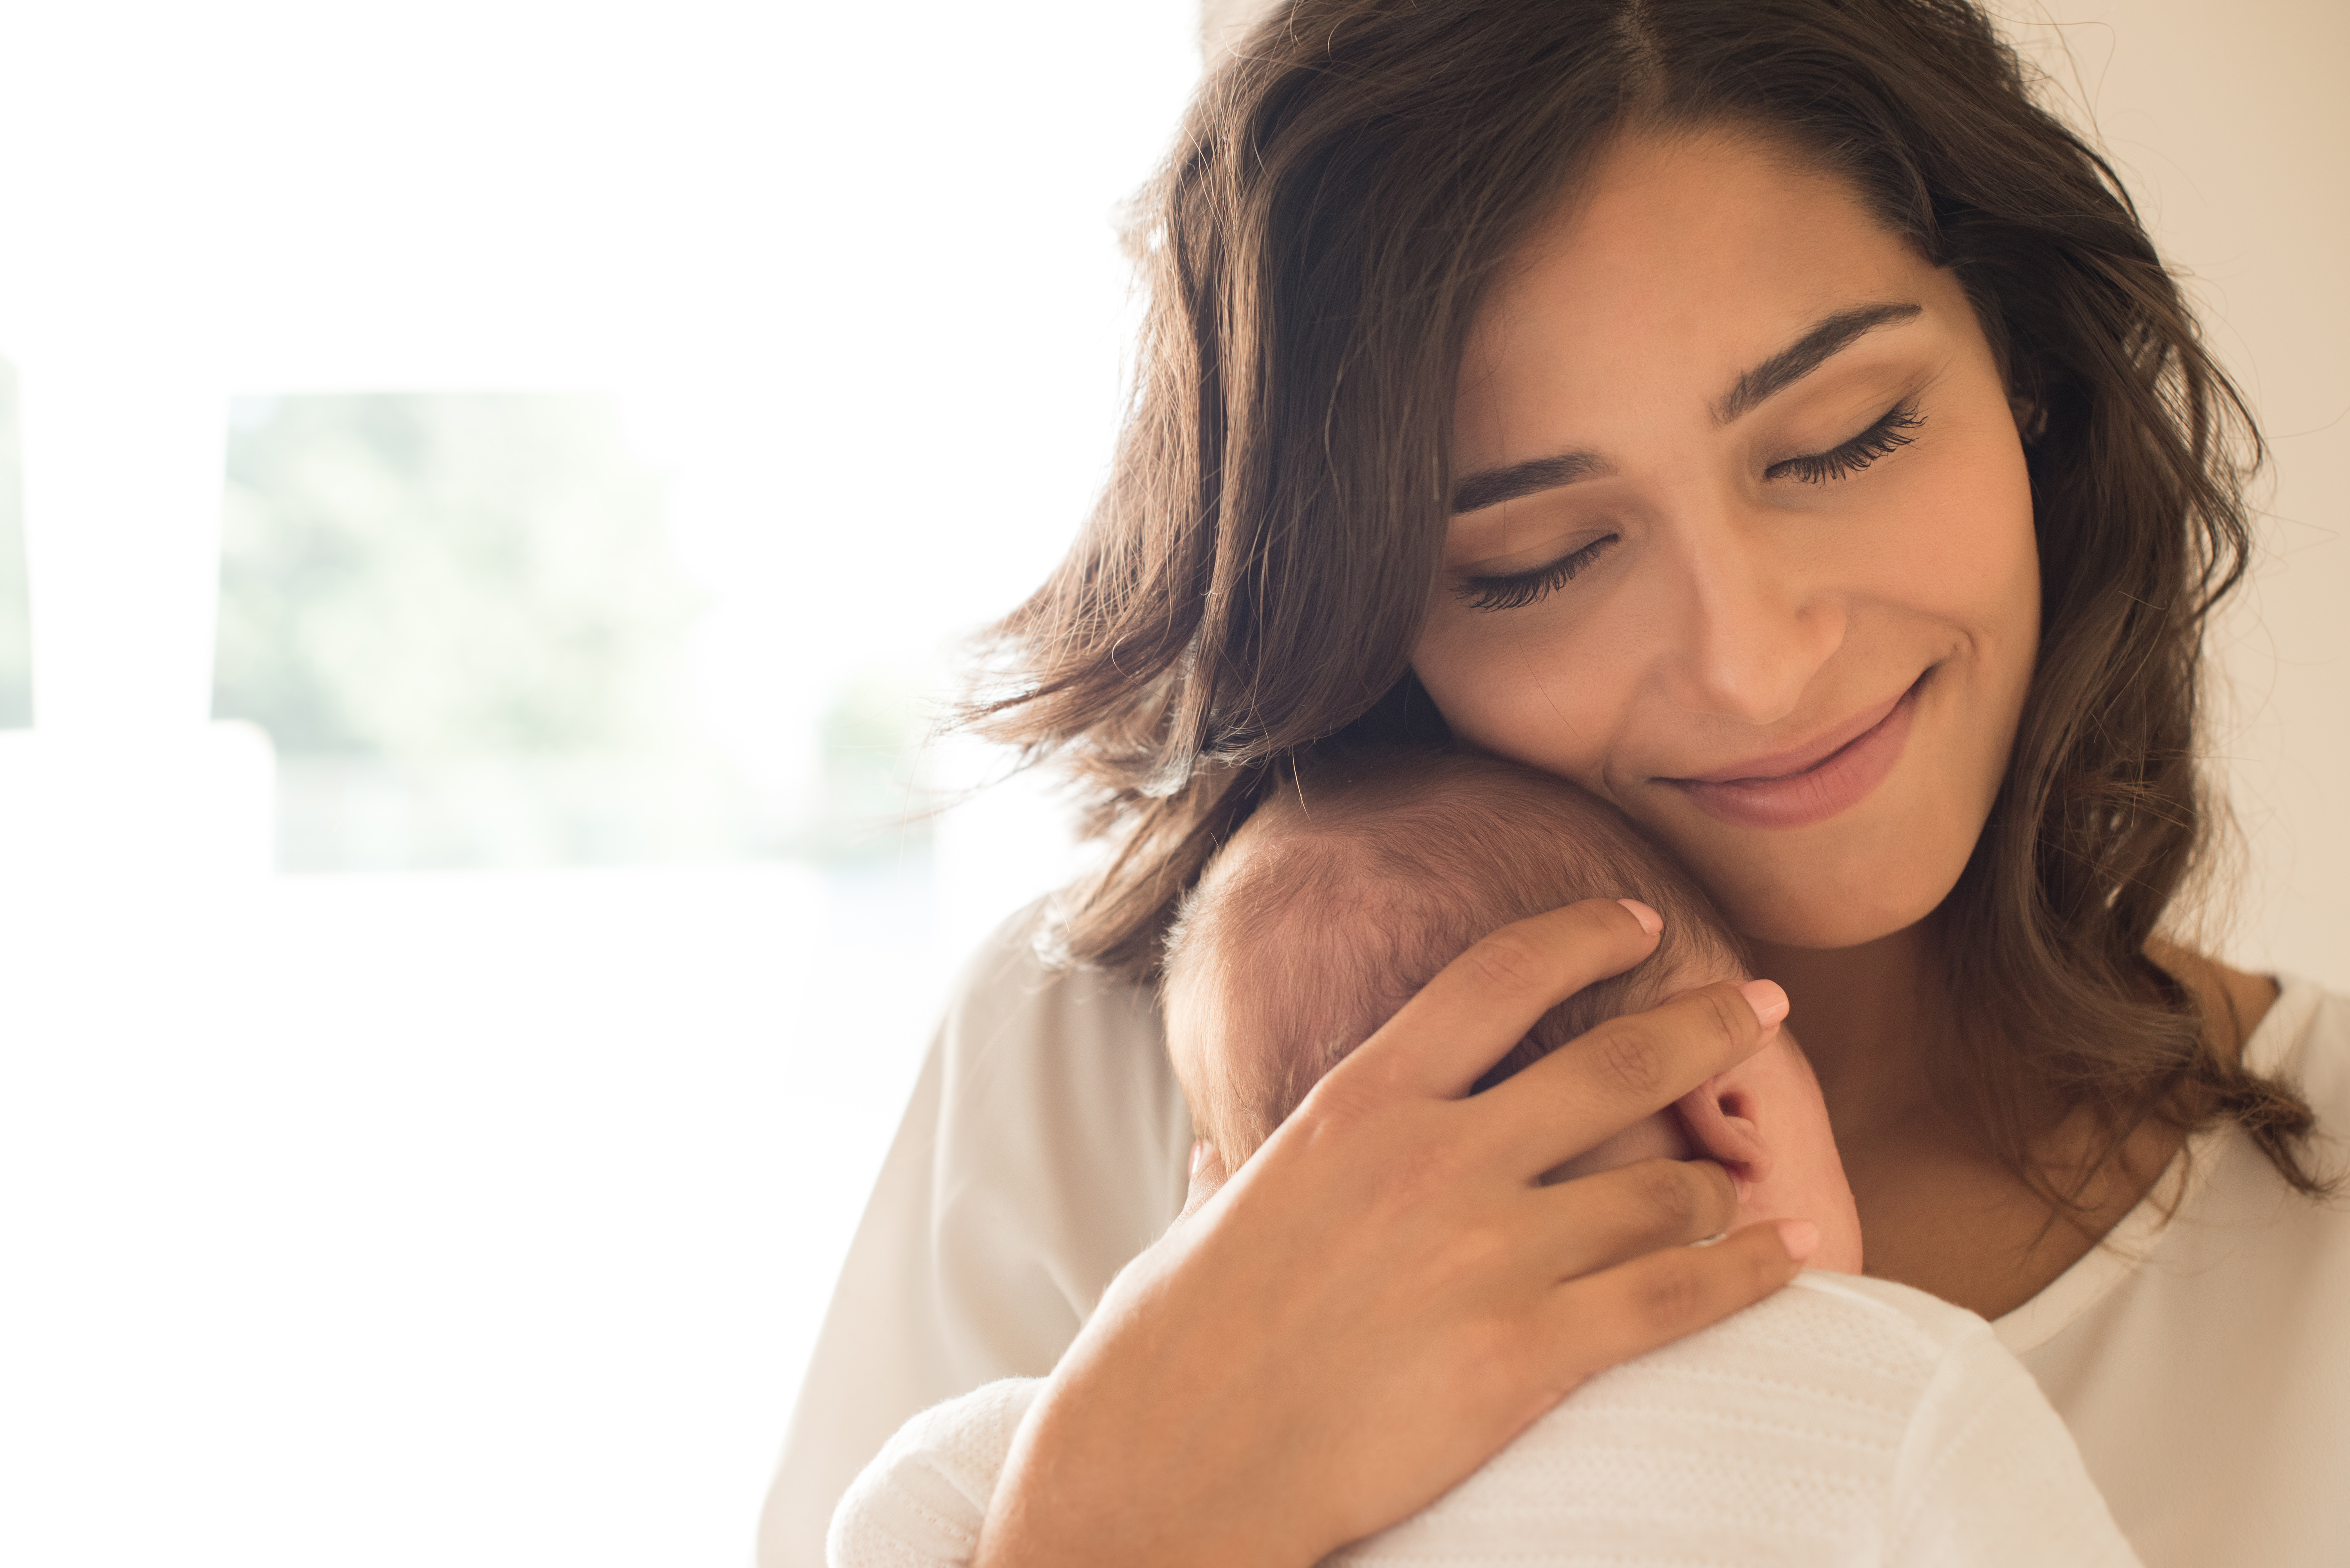 Une femme tenant un nouveau-né | Source : Shutterstock